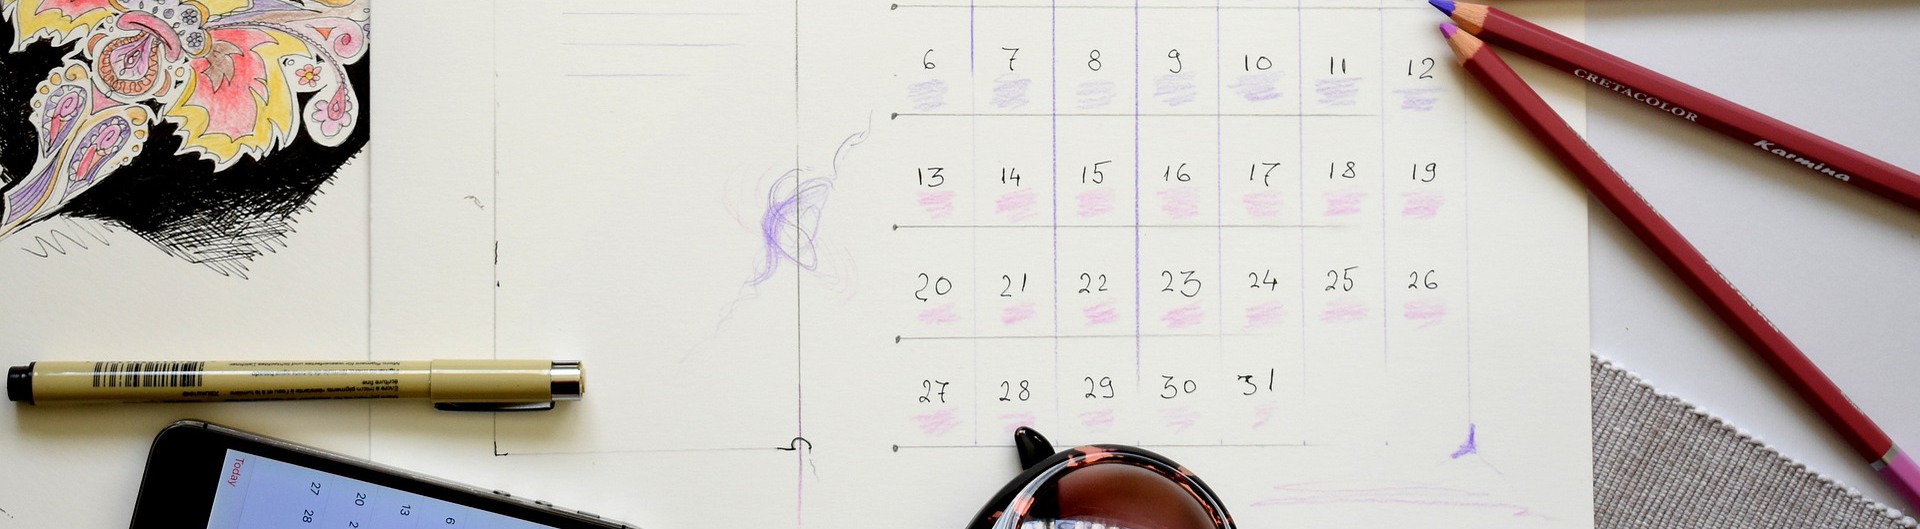 Kalender, mobiltelefoner, pennor och solglasögon på ett bord.